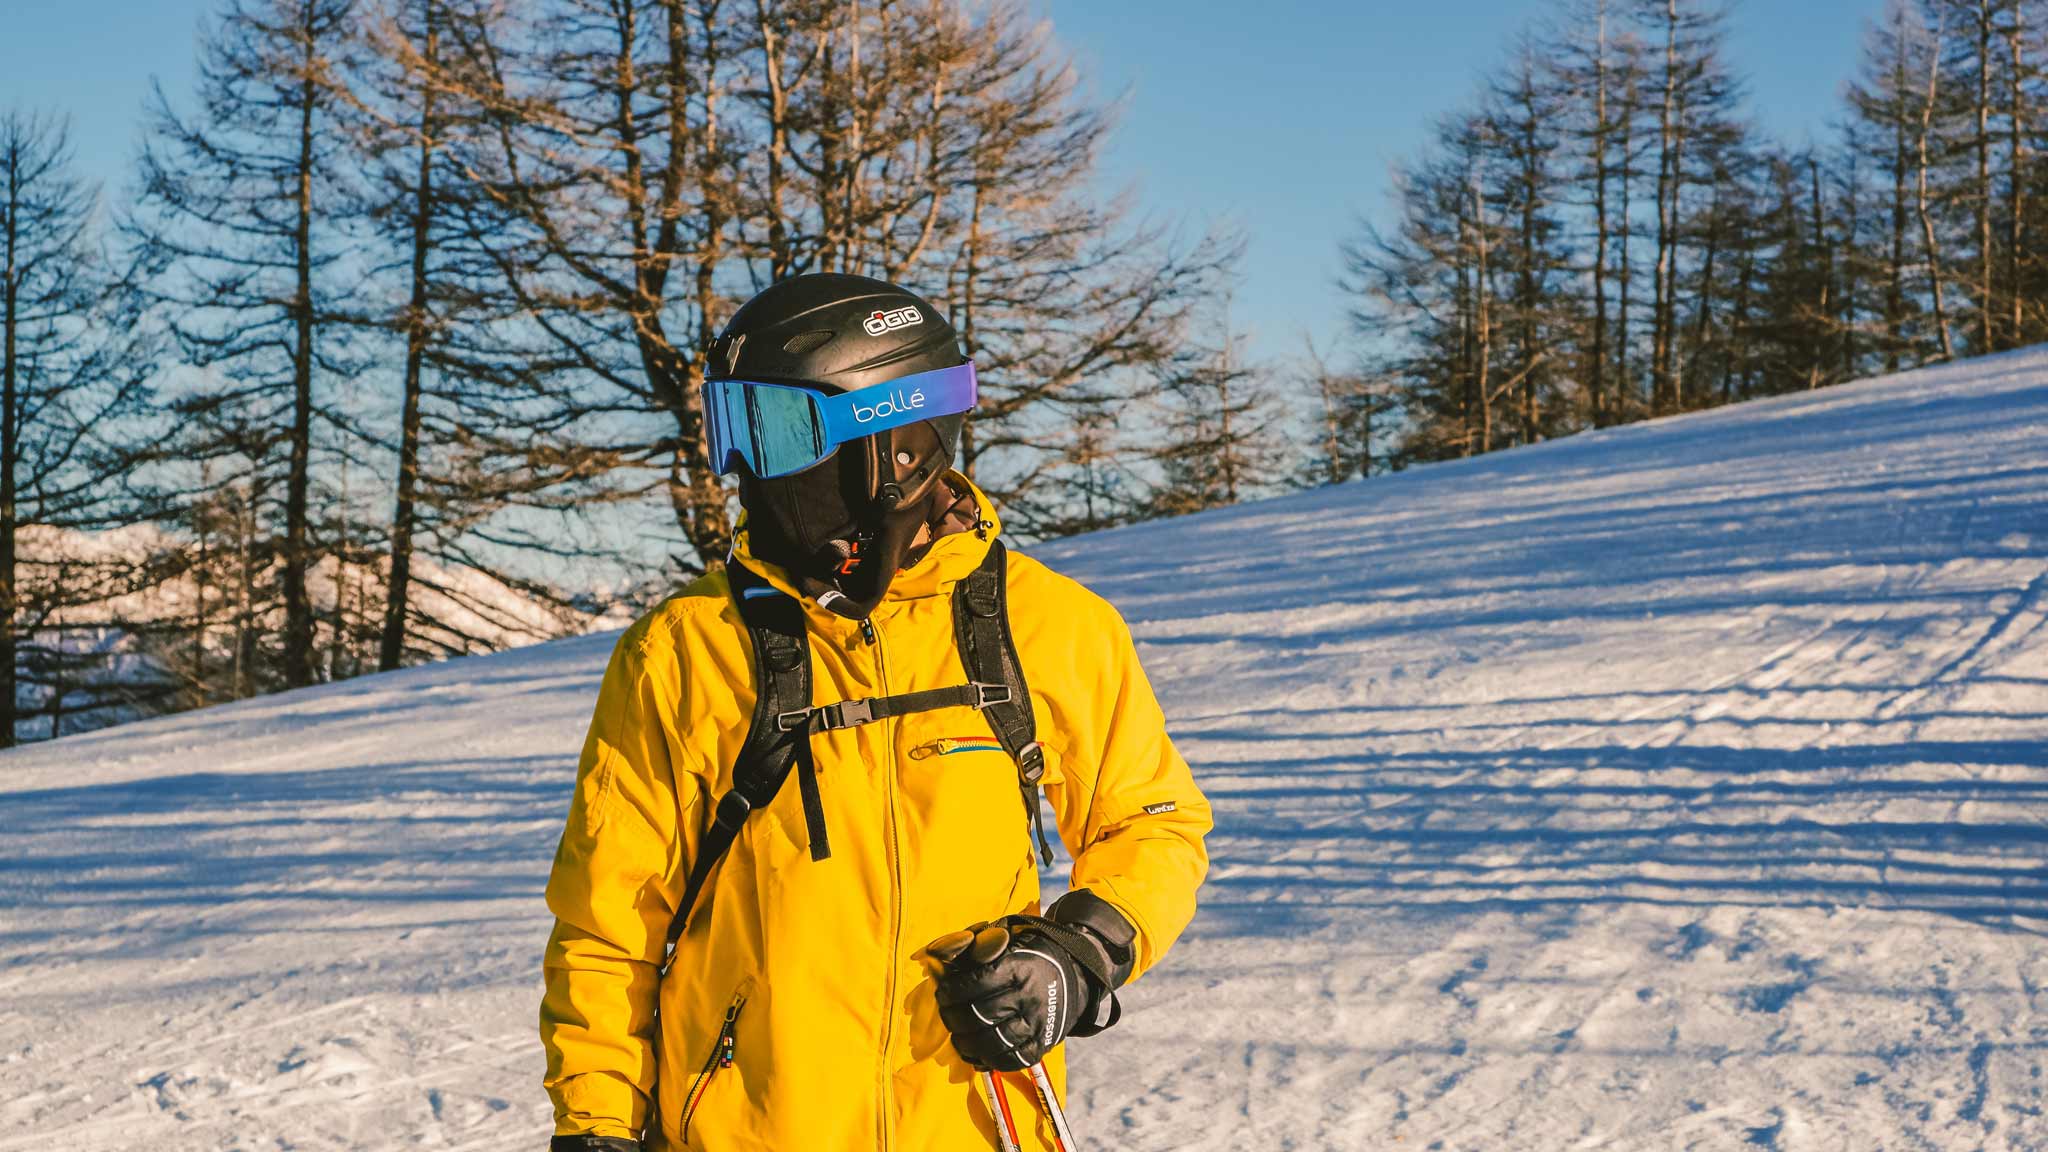 Sicherheit auf der Skipiste: Jeder Skifahrer und Snowboarder sollte immer ausreichend Schutzbekleidung wie einen Helm und Rückenprotektor tragen.